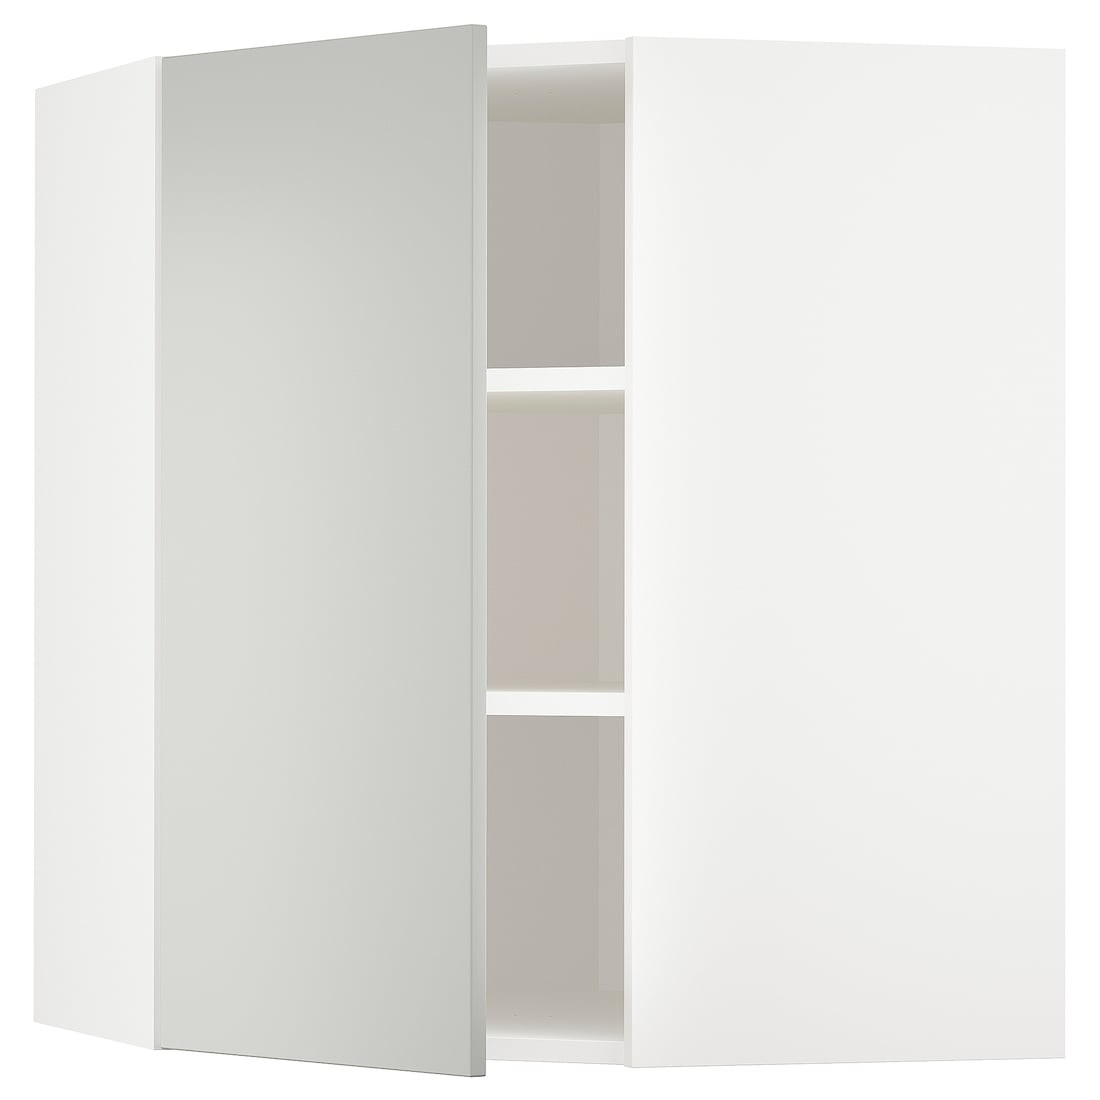 METOD Угловой навесной шкаф с полками, белый / Хавсторп светло-серый, 68x80 см